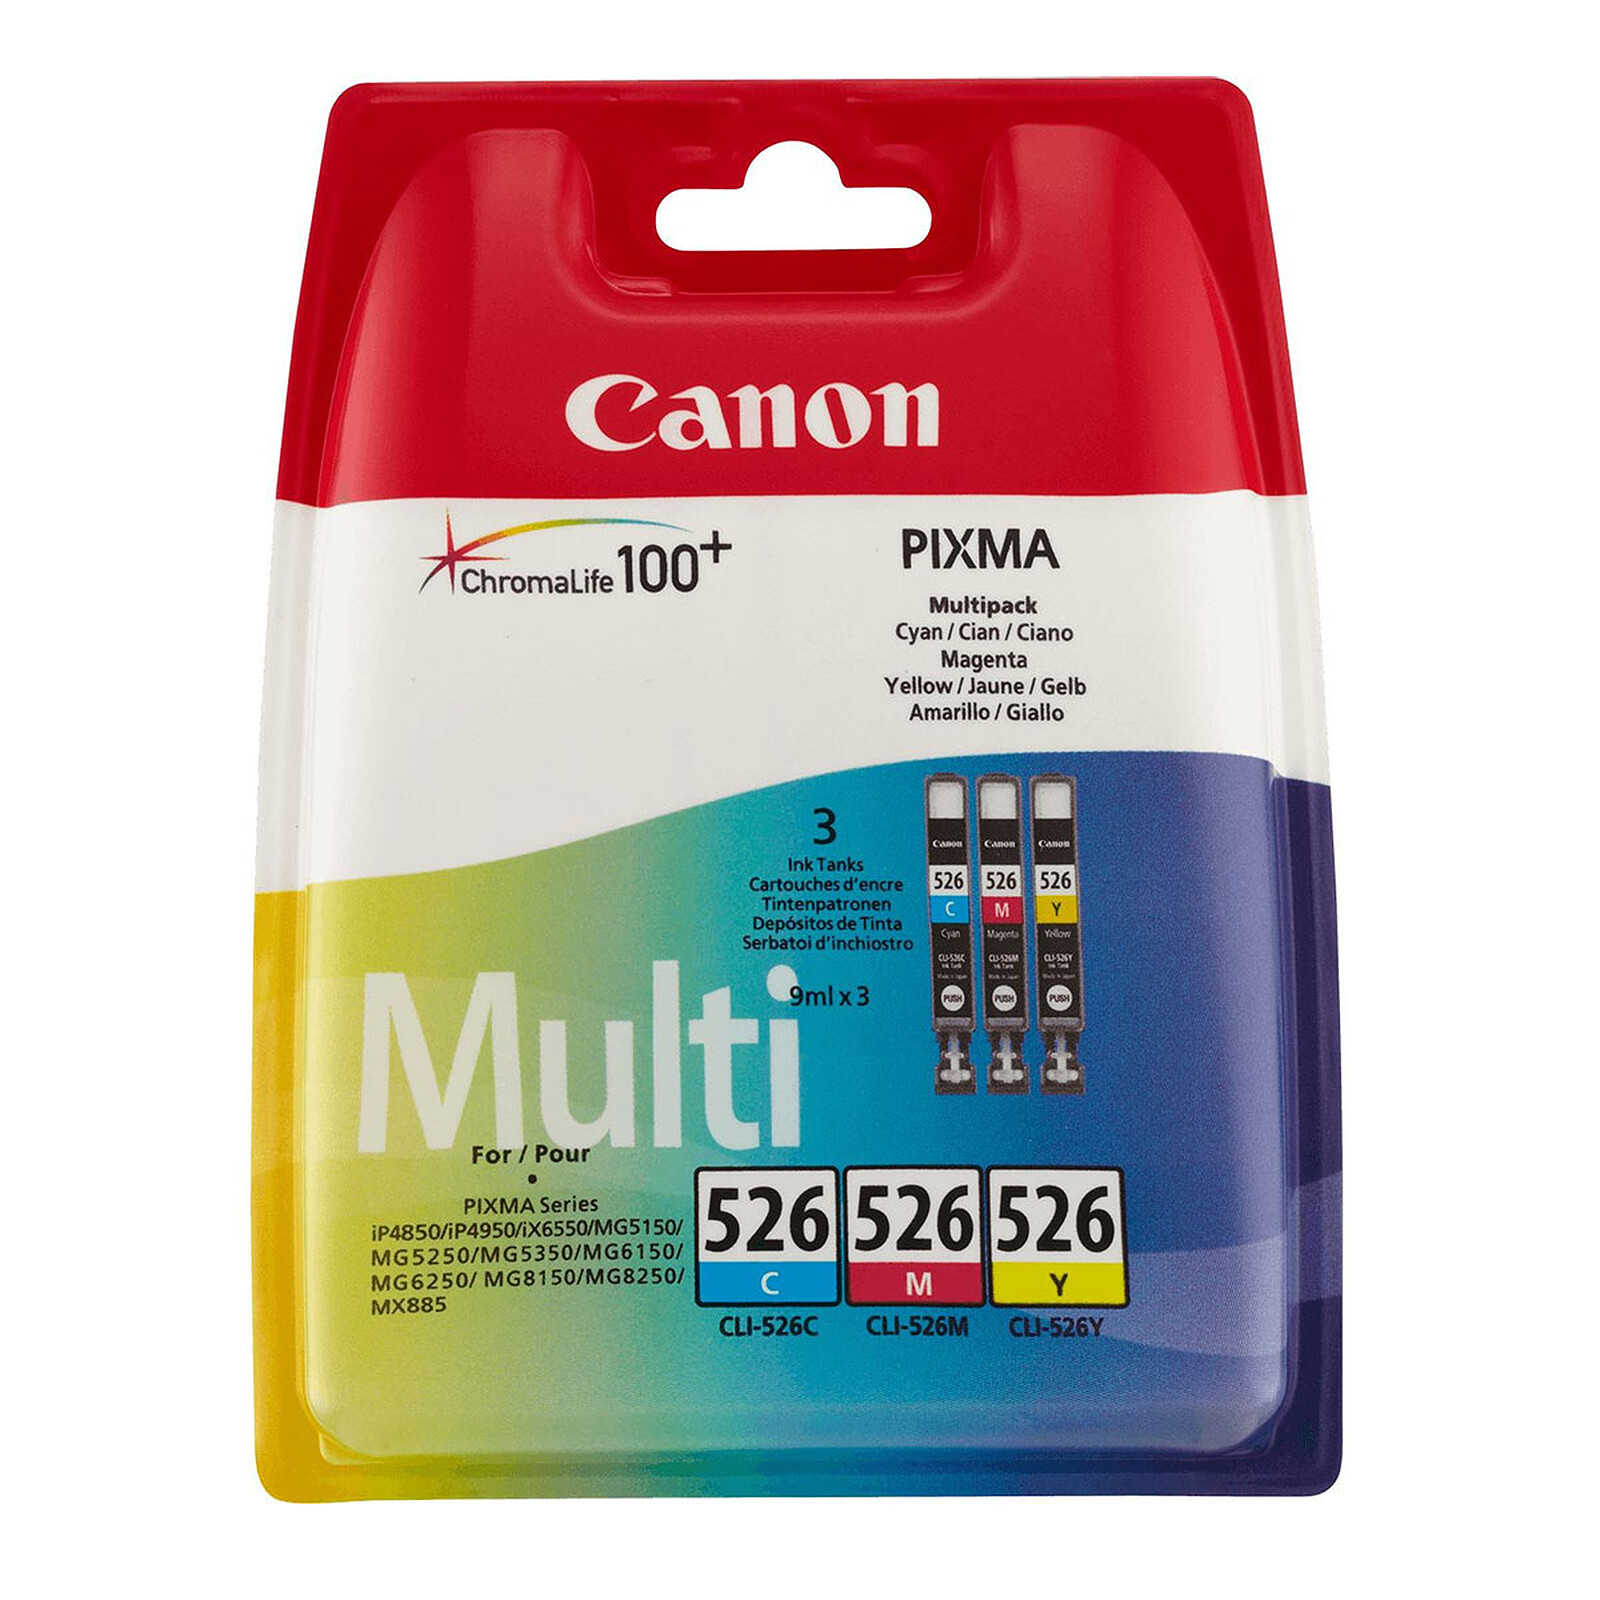 Canon CLI-526 Printer - LDLC cartridge 